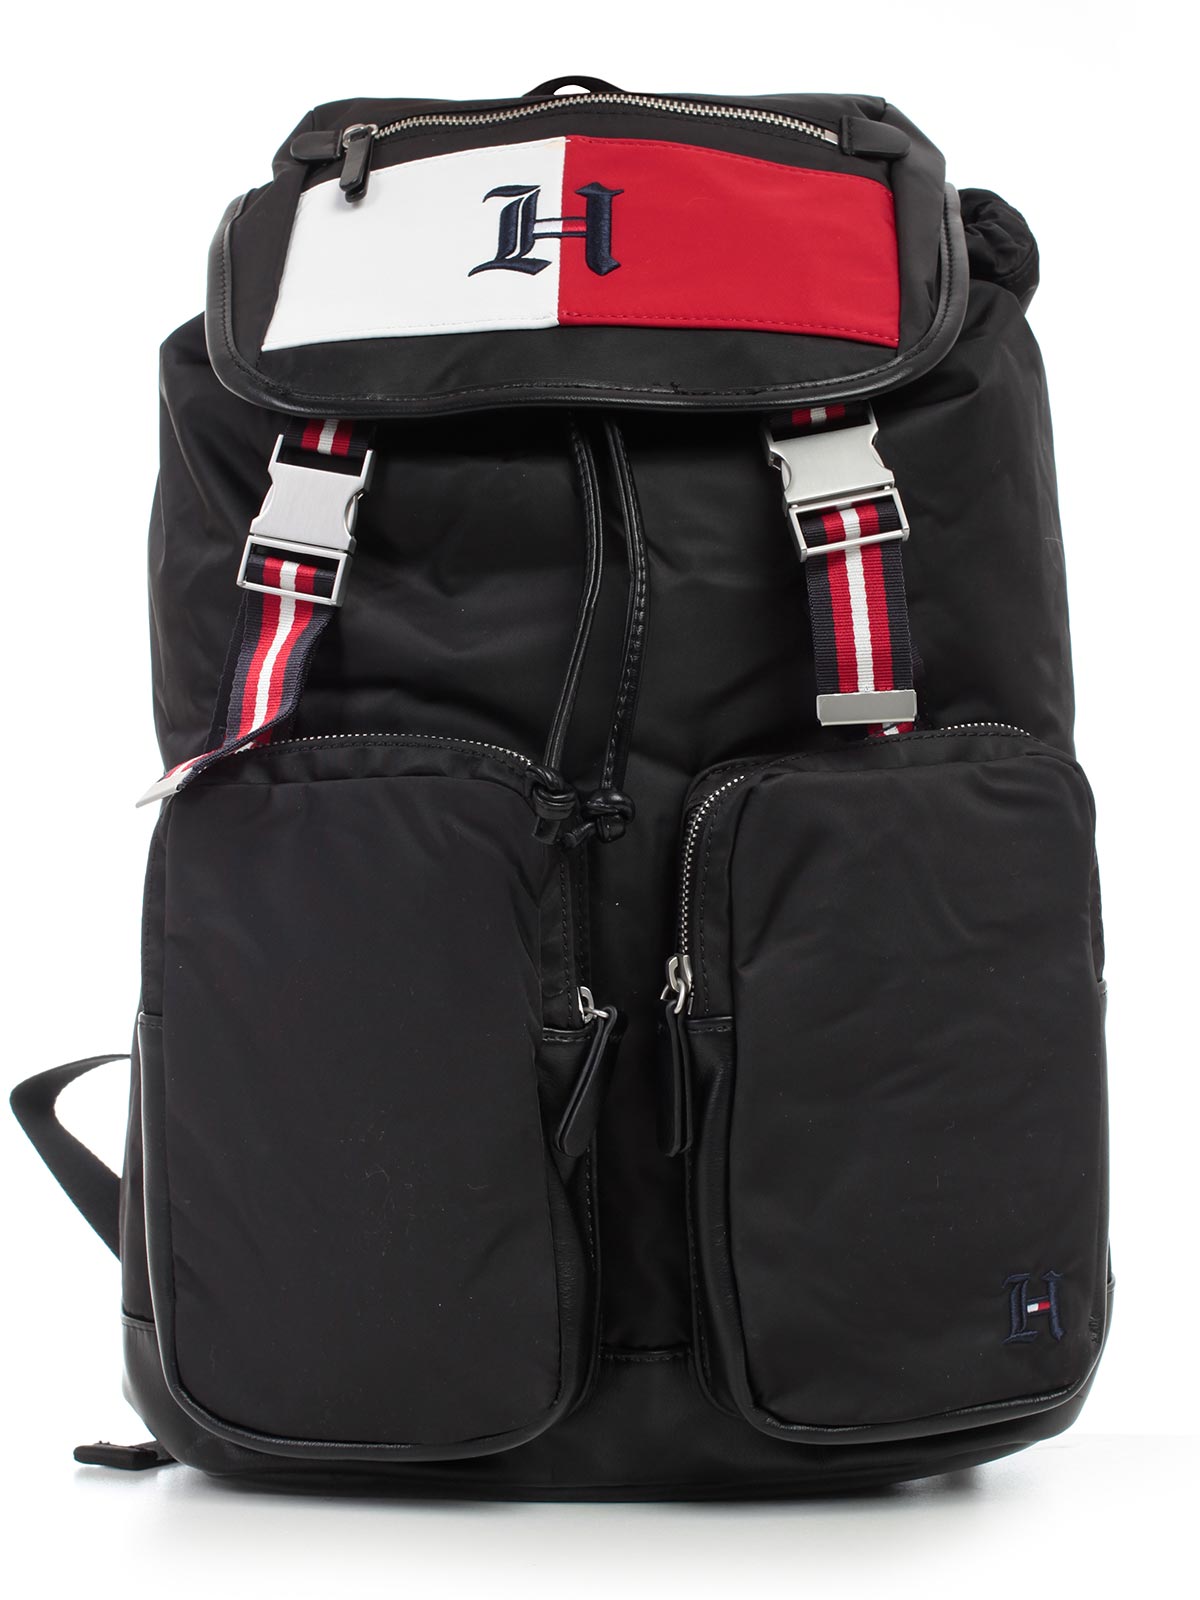 hilfiger backpack mens